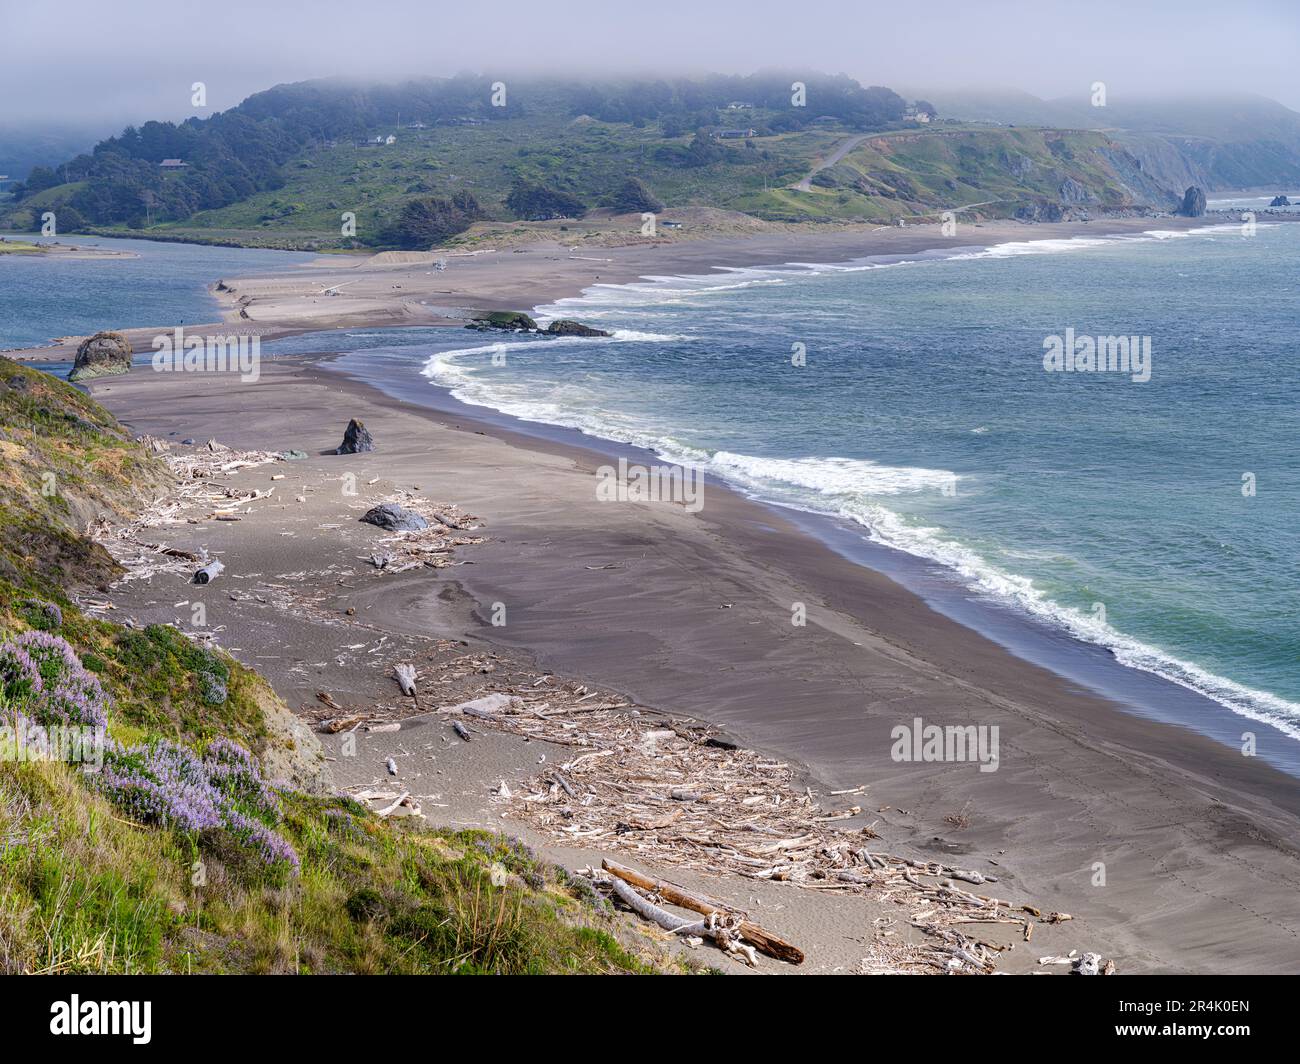 Jenner by the Sea, le fleuve russe rencontre l'océan Pacifique, et la plage est pleine de débris de bois éparpillés. Banque D'Images